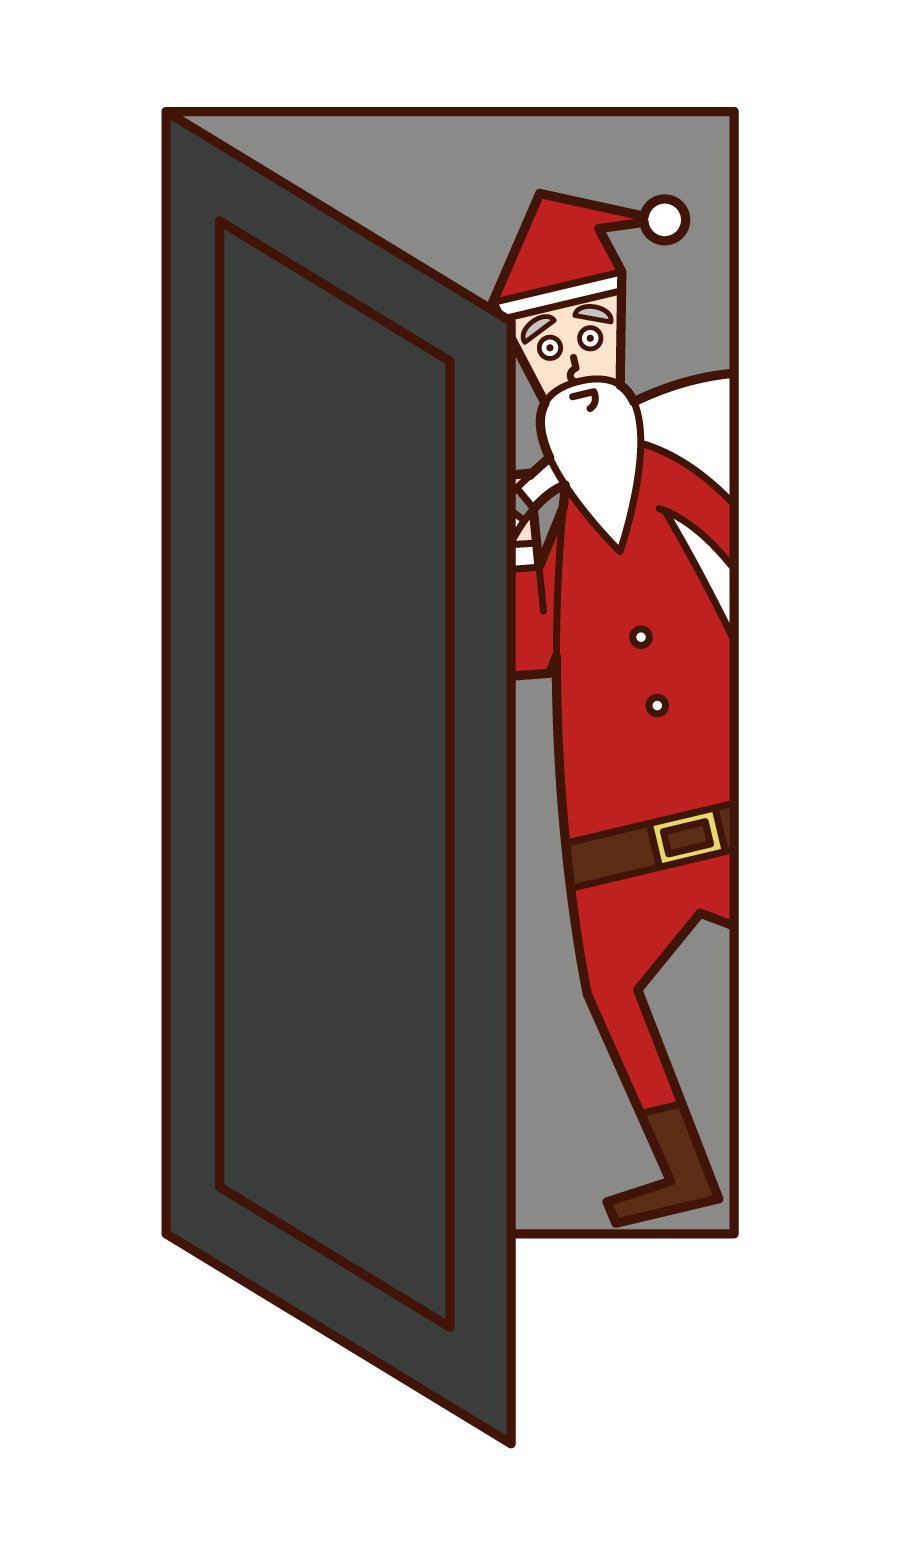 산타 클로스 (남성)가 방에 몰래 들어가는 그림